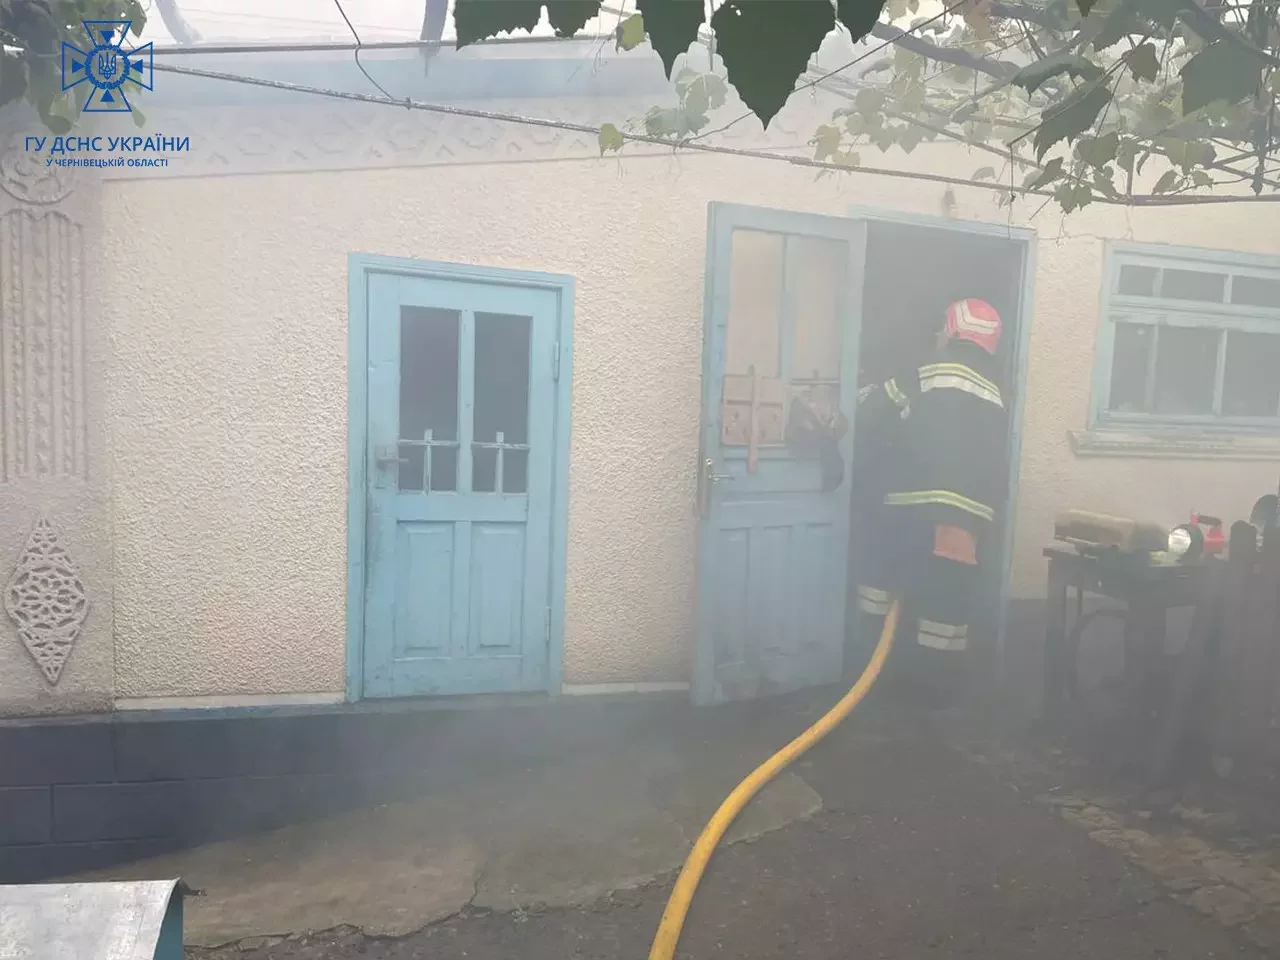 Хата повна диму: на Буковині гасили пожежу у будівлі